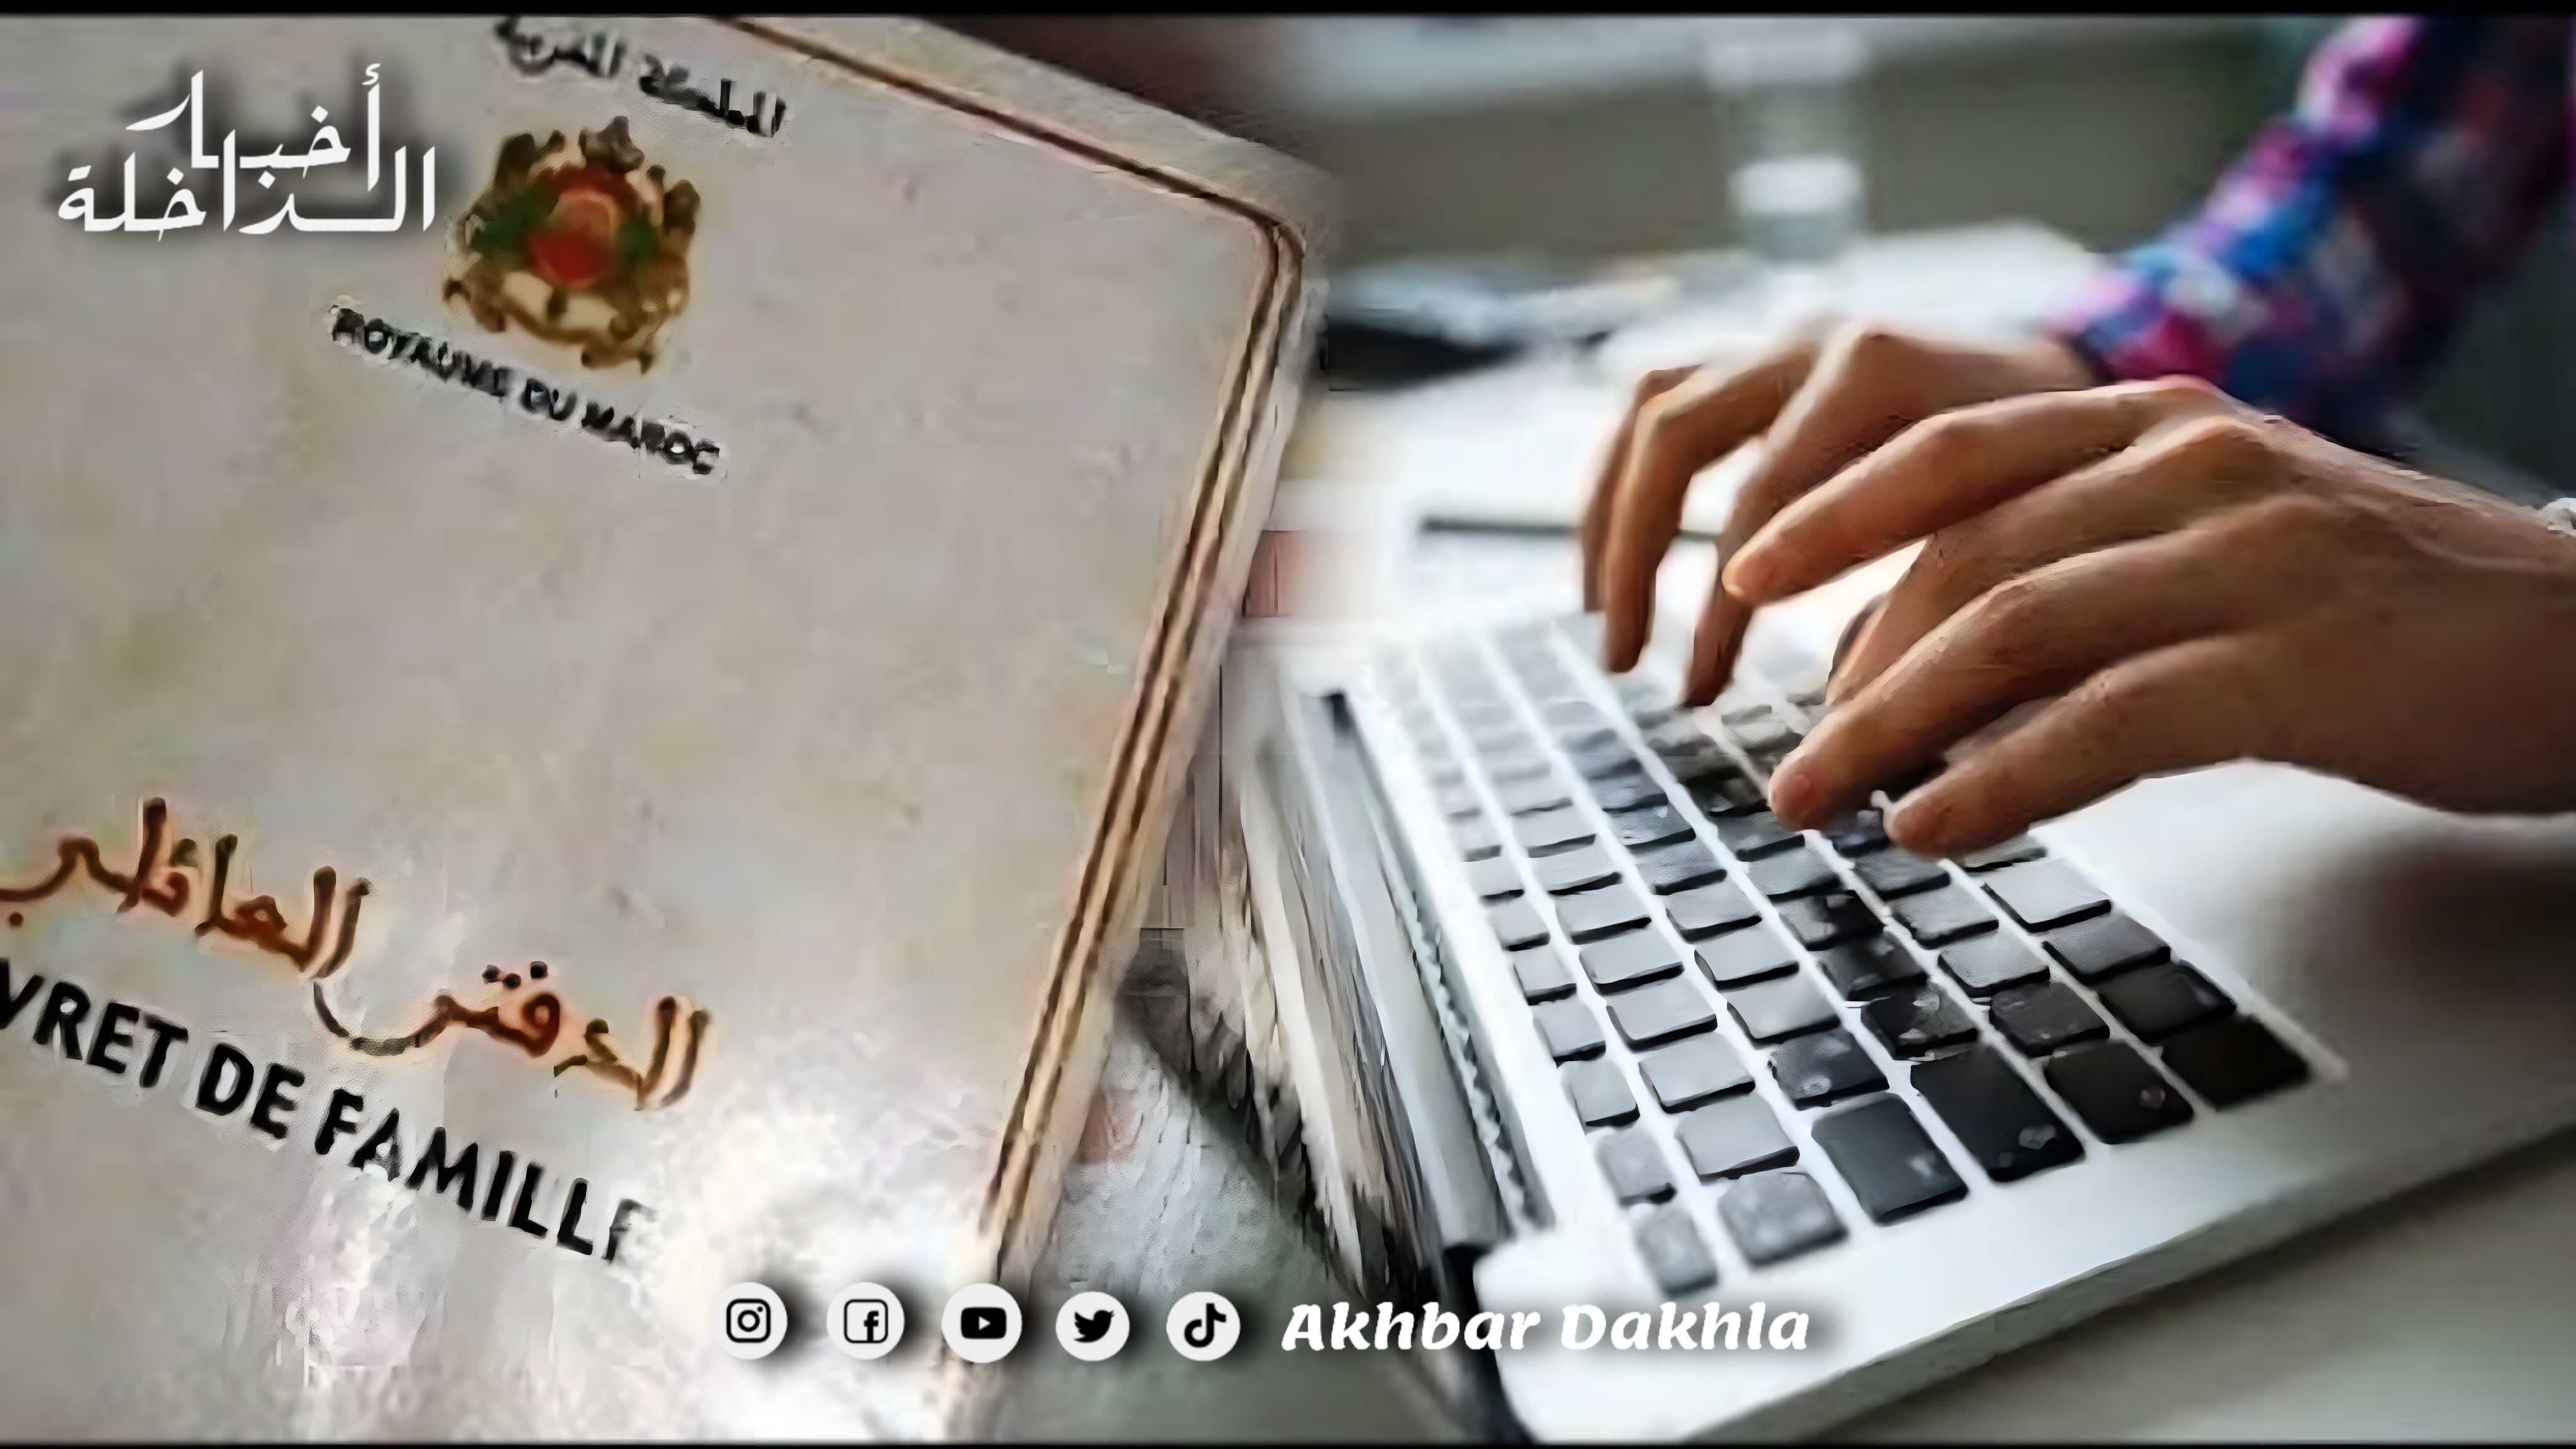 التسجيل الالكتروني بالحالة المدنية بالمغرب